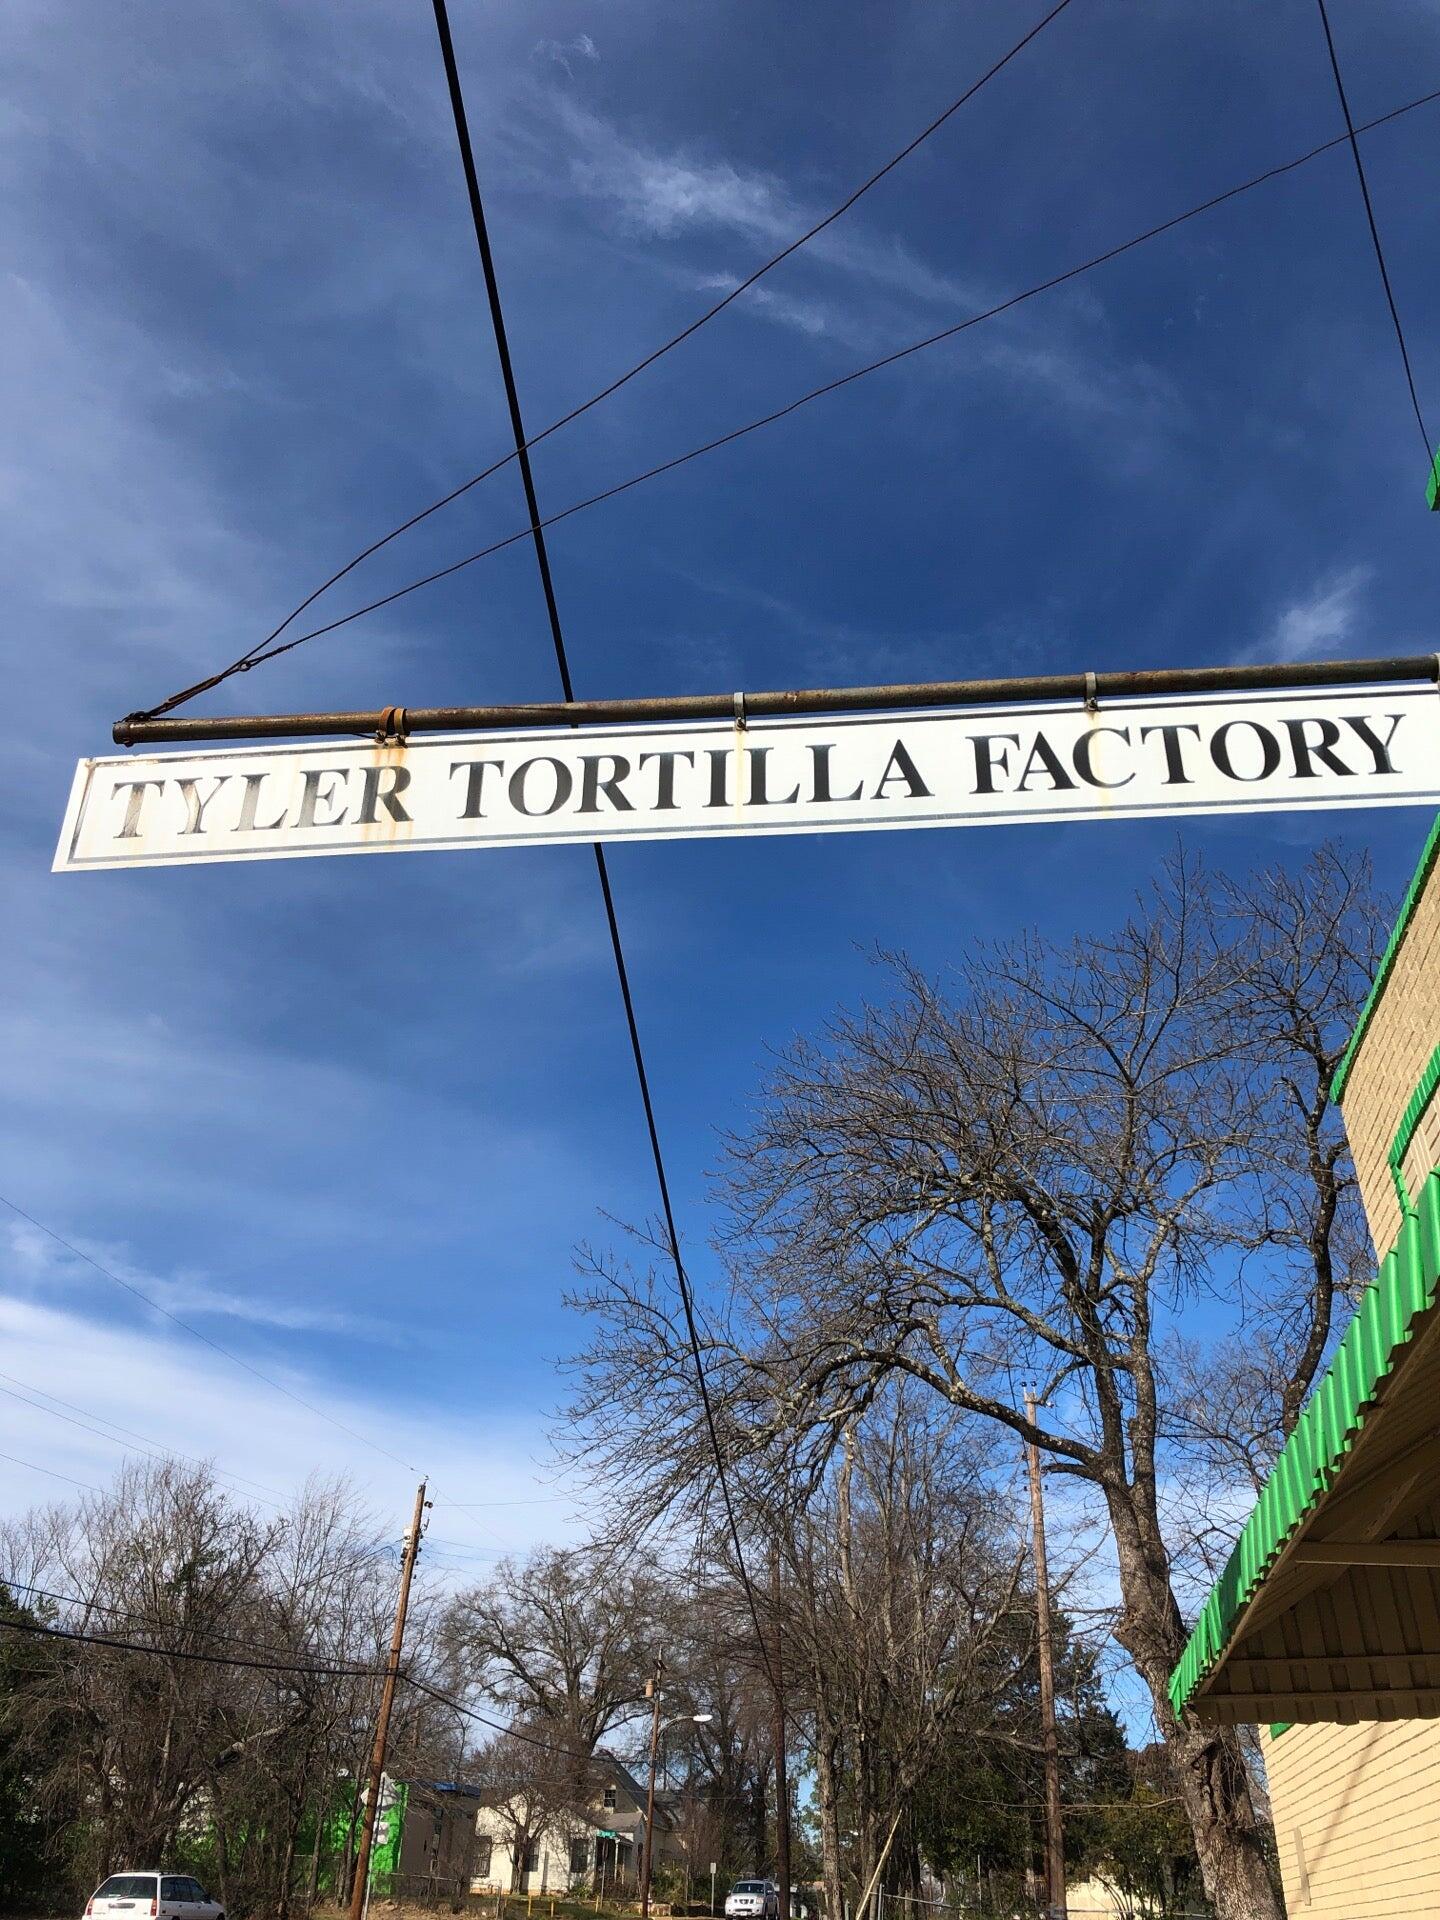 Tyler Tortilla Factory